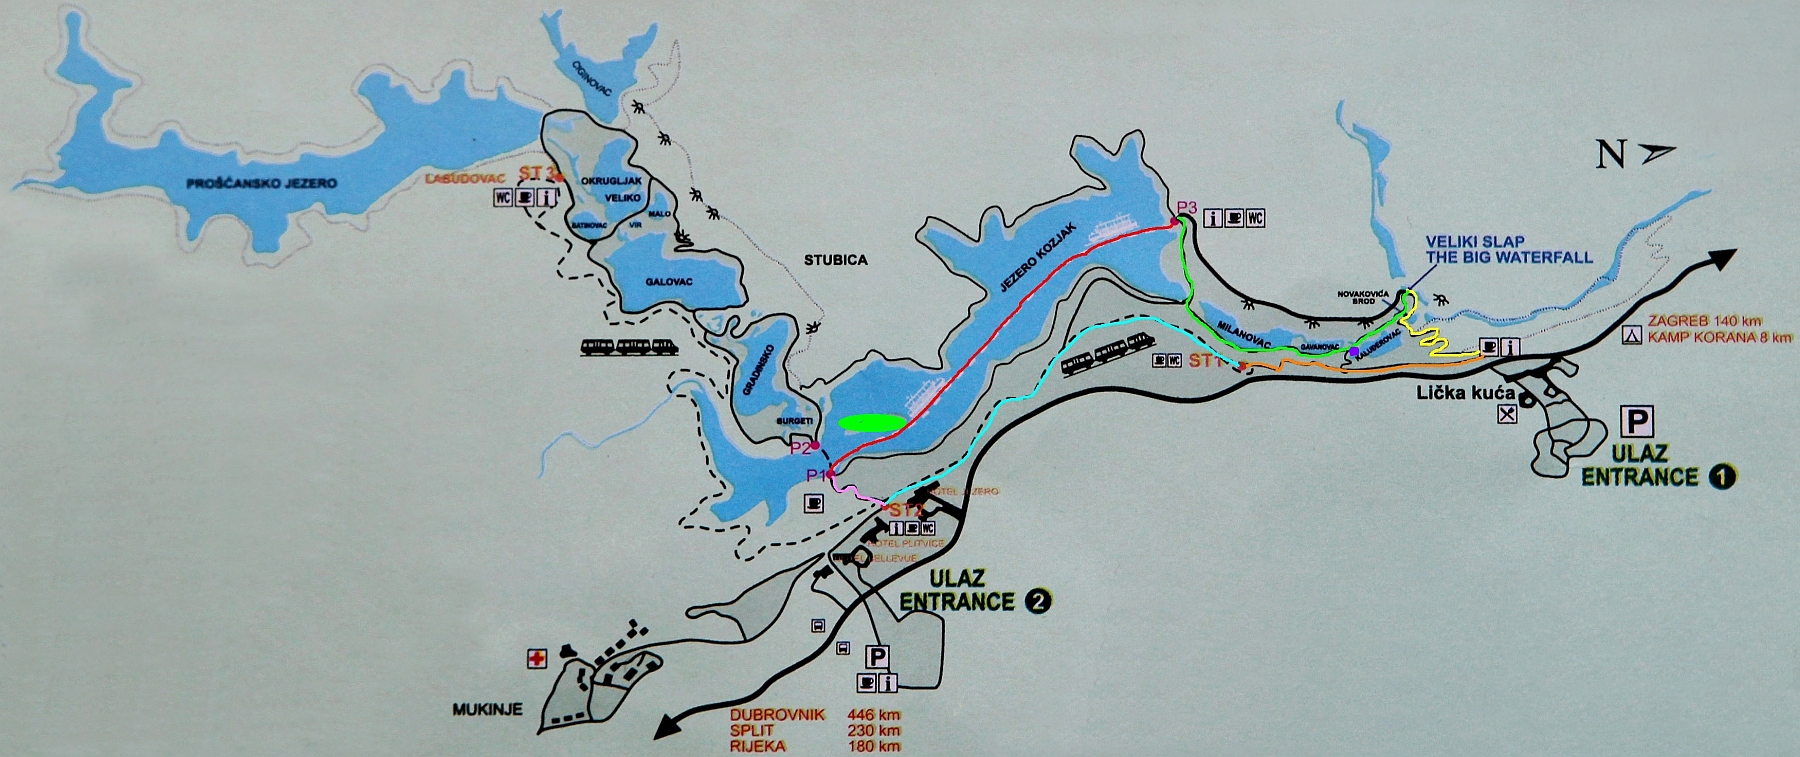 mapa jezior z oznaczoną trasą.jpg